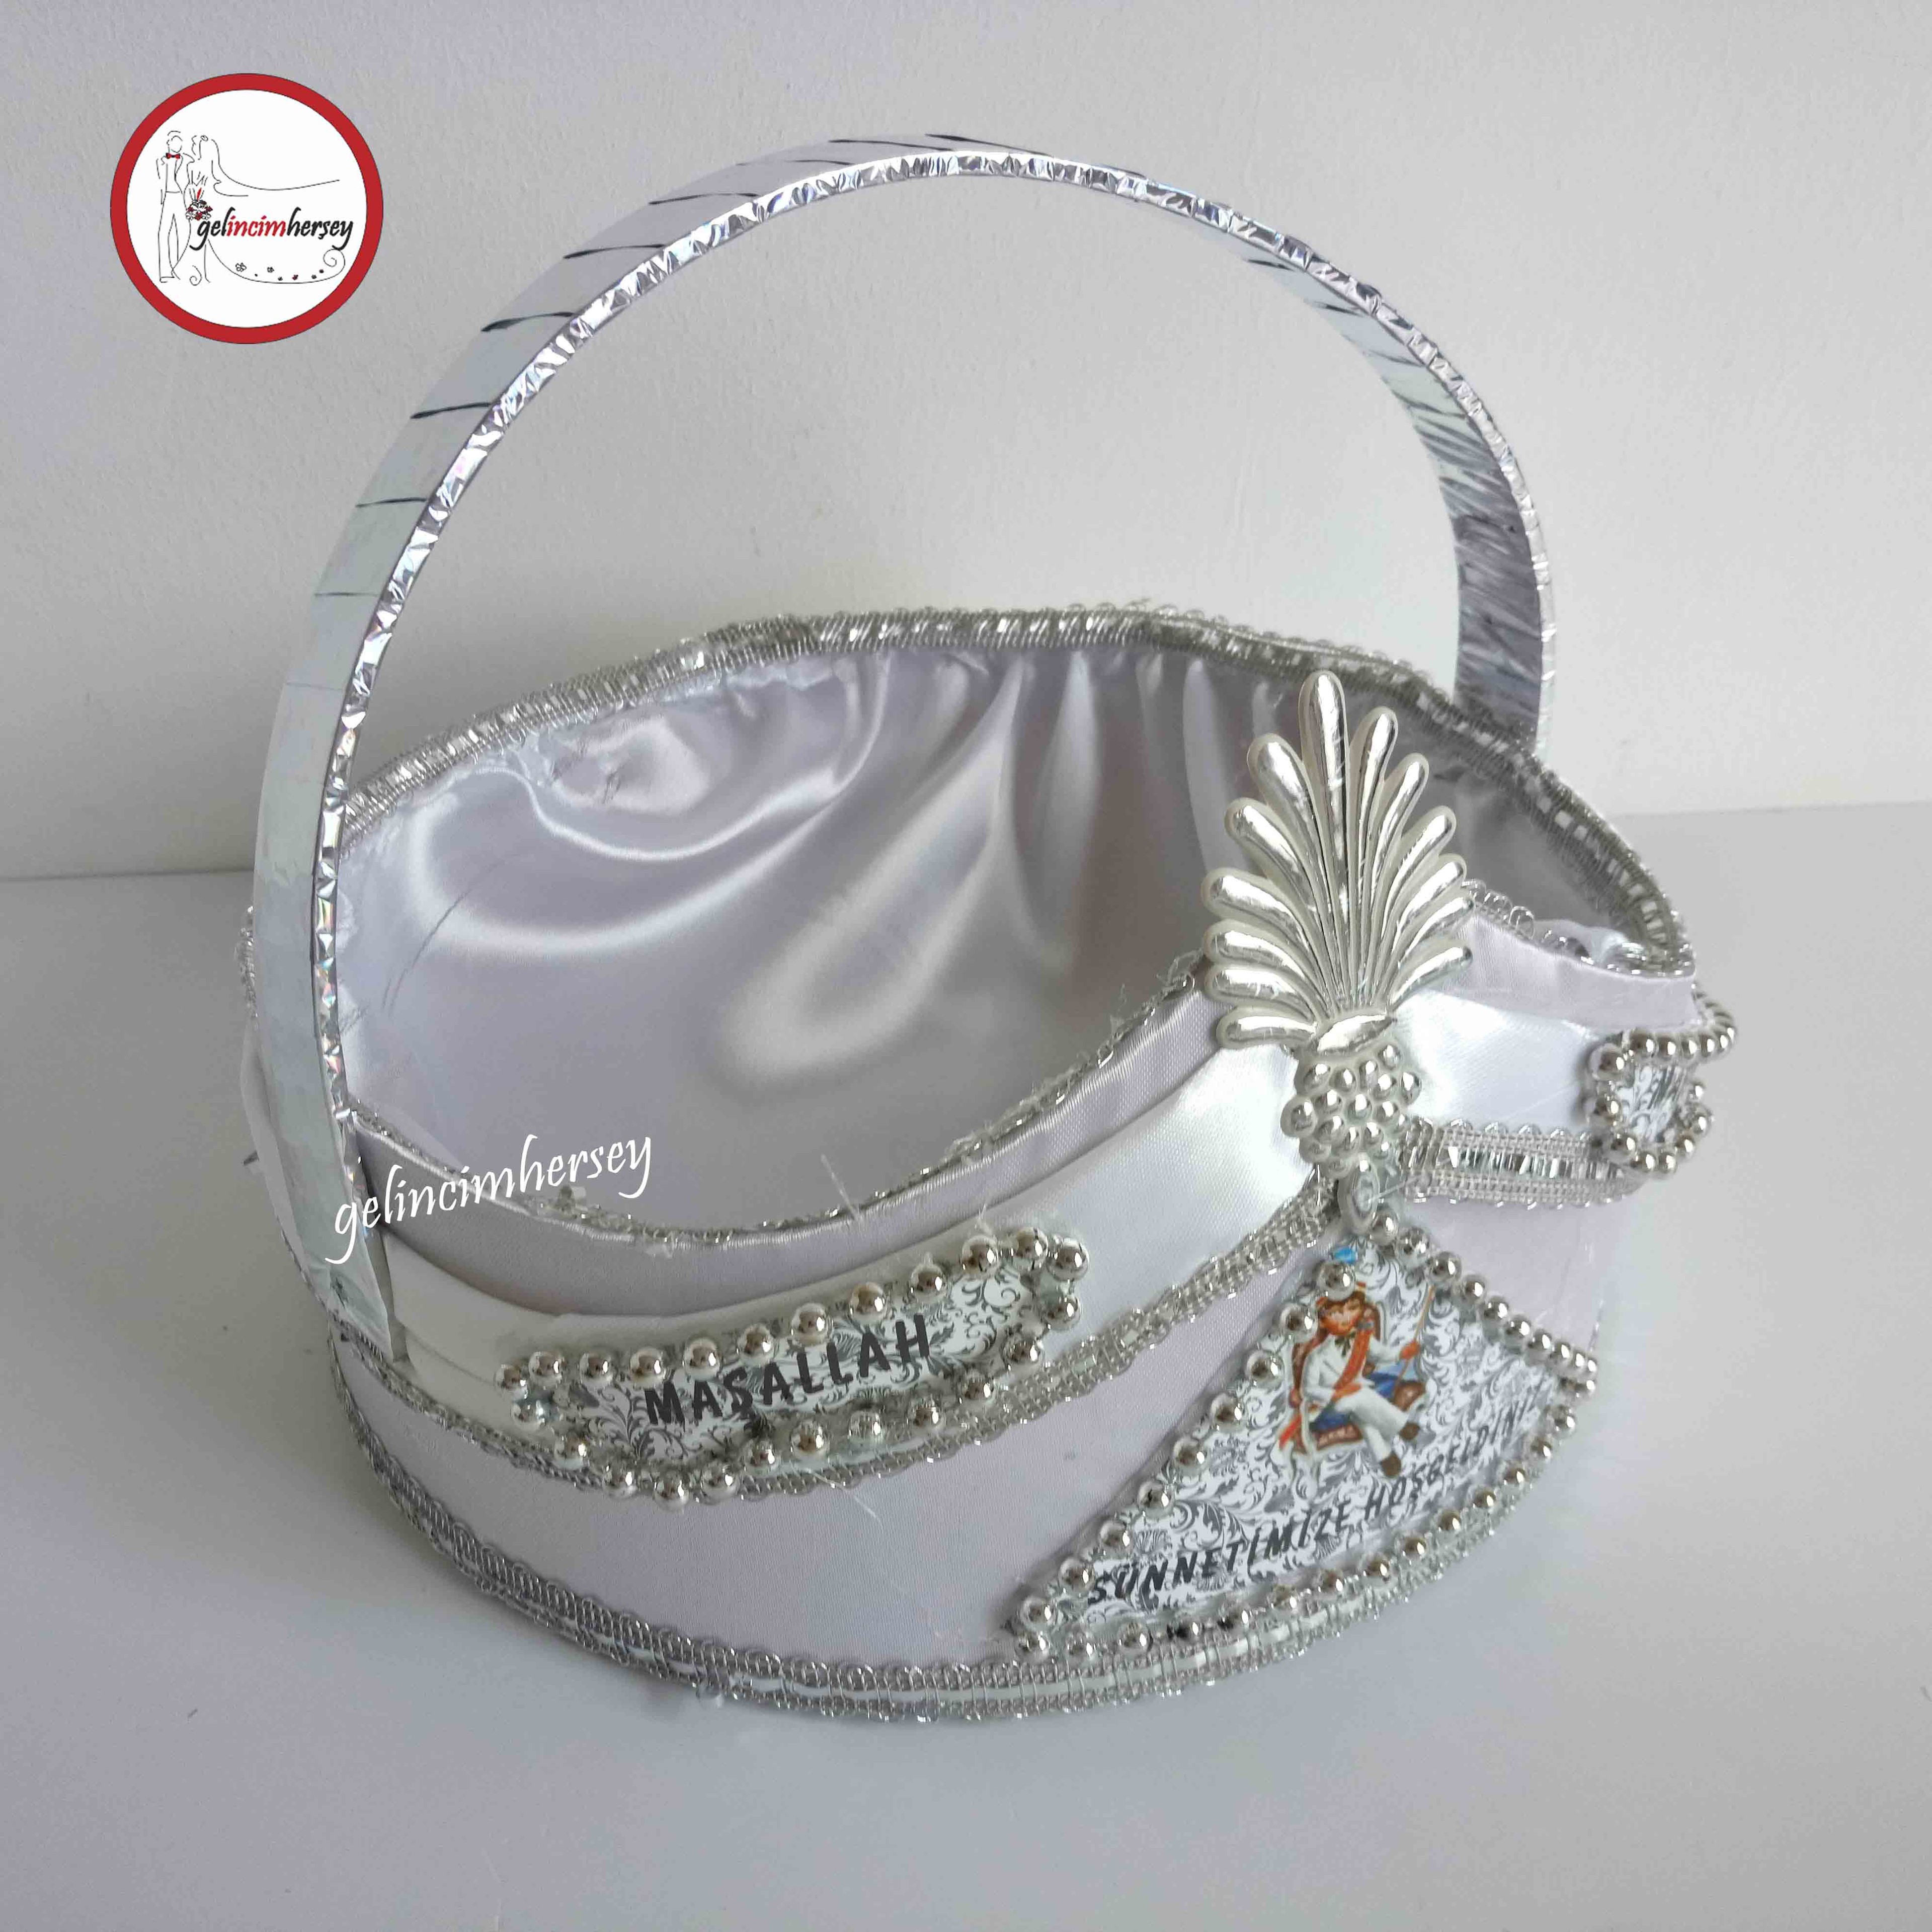 Gelincimherşey Beyaz Hediyelik Sünnet Şapka Şeklinde Süslemeli Sepet - Gümüş